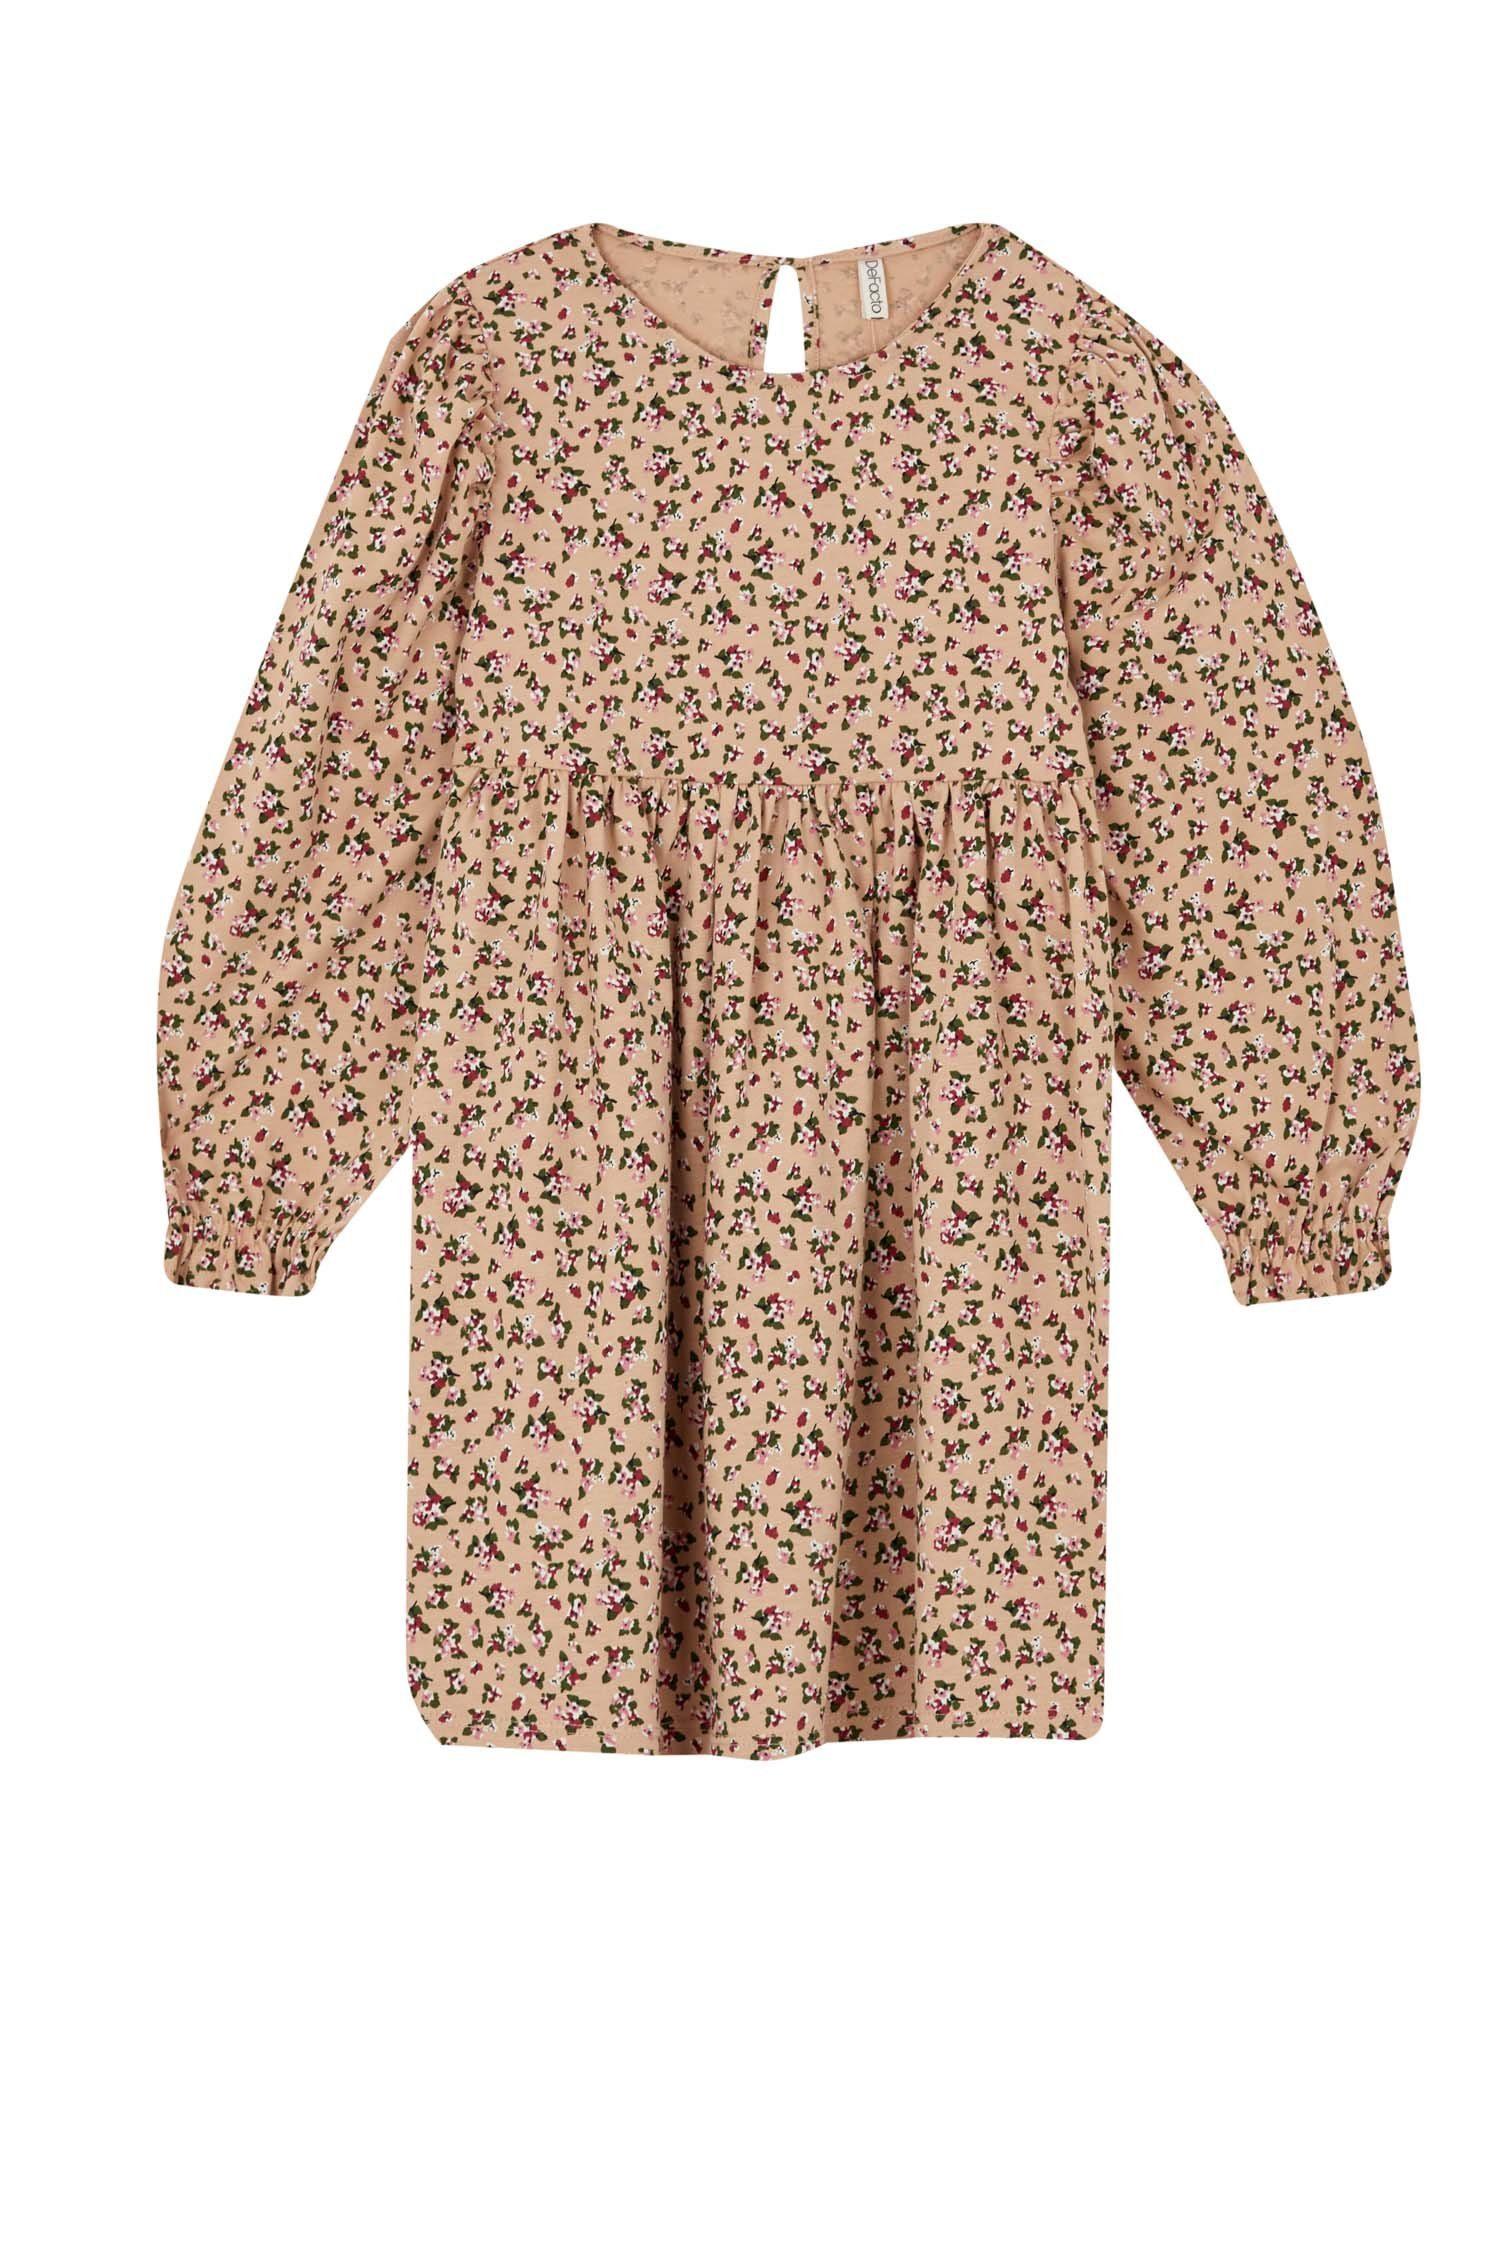 DeFacto Jerseykleid Mädchen Blumenkleid DRESS Lachs